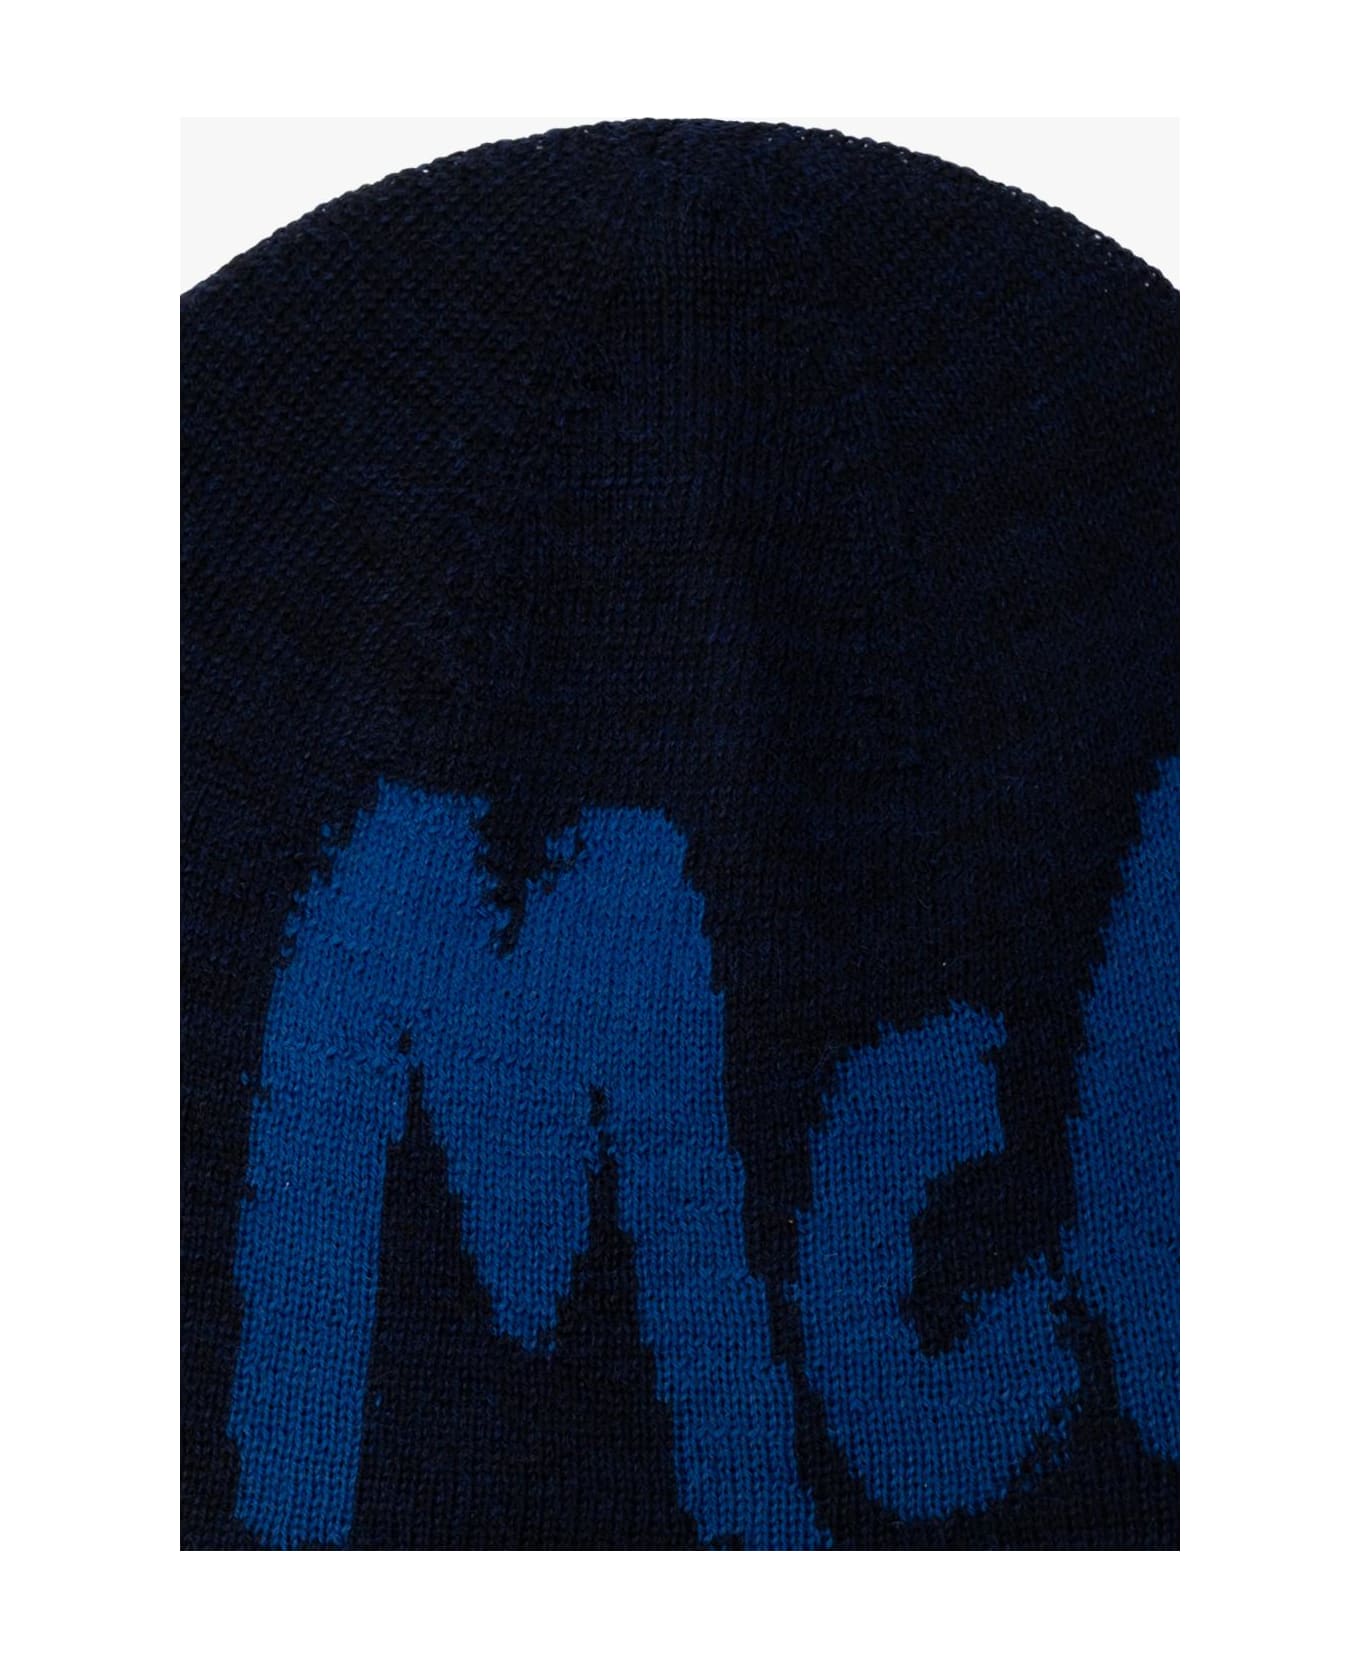 Alexander McQueen Logo Embroidered Knit Beanie